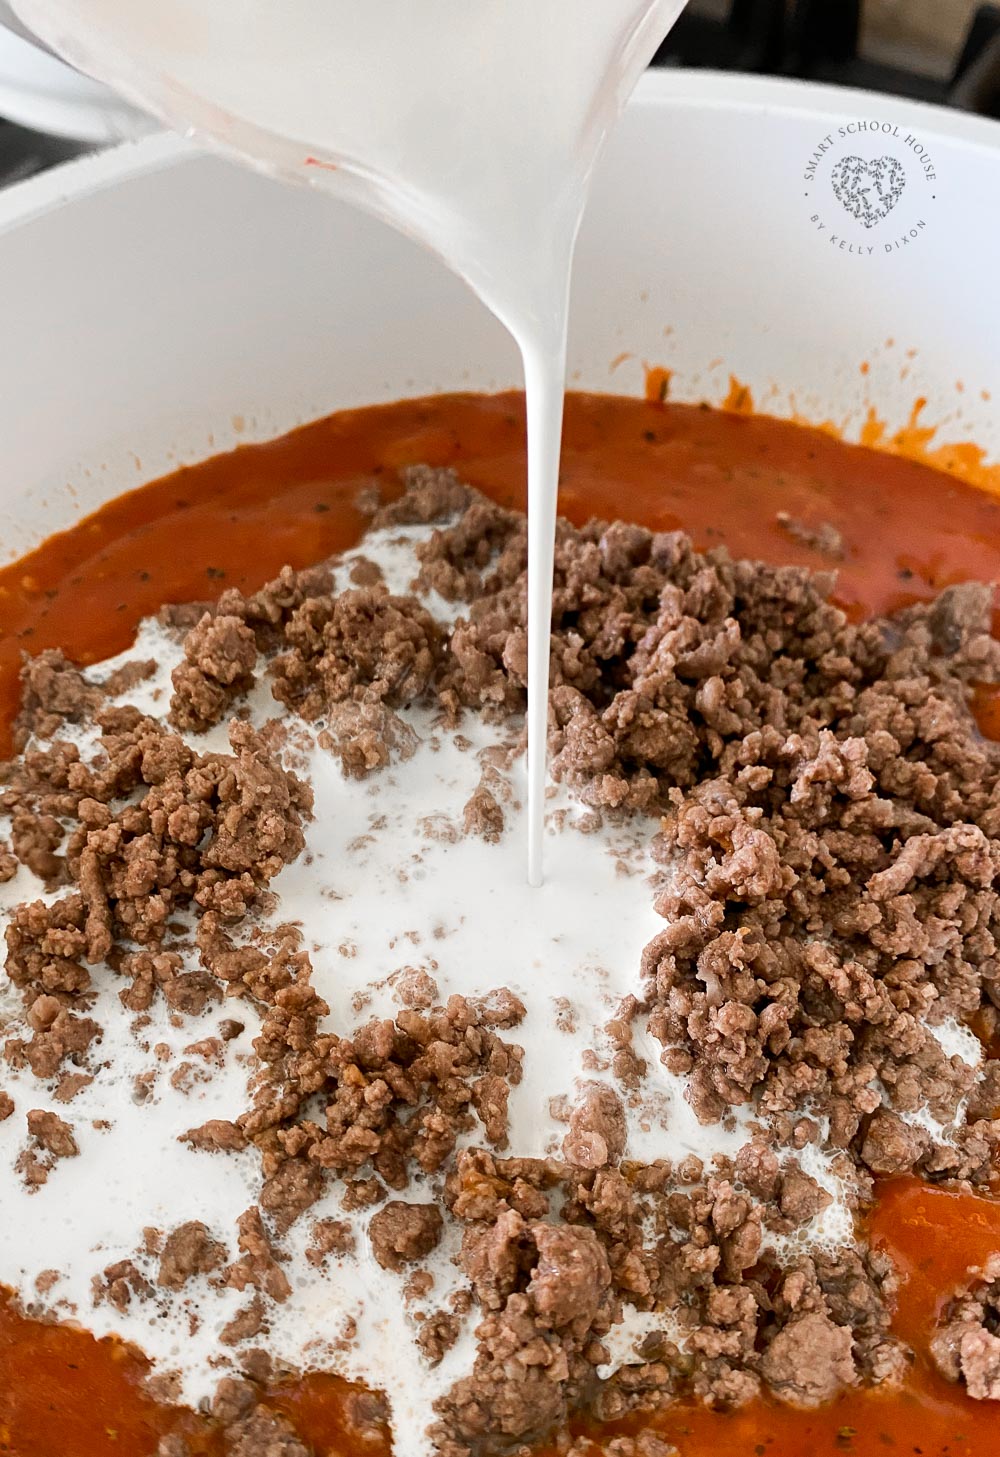 Receta de pasta cremosa de carne: ¡una idea rápida y fácil para cenar!